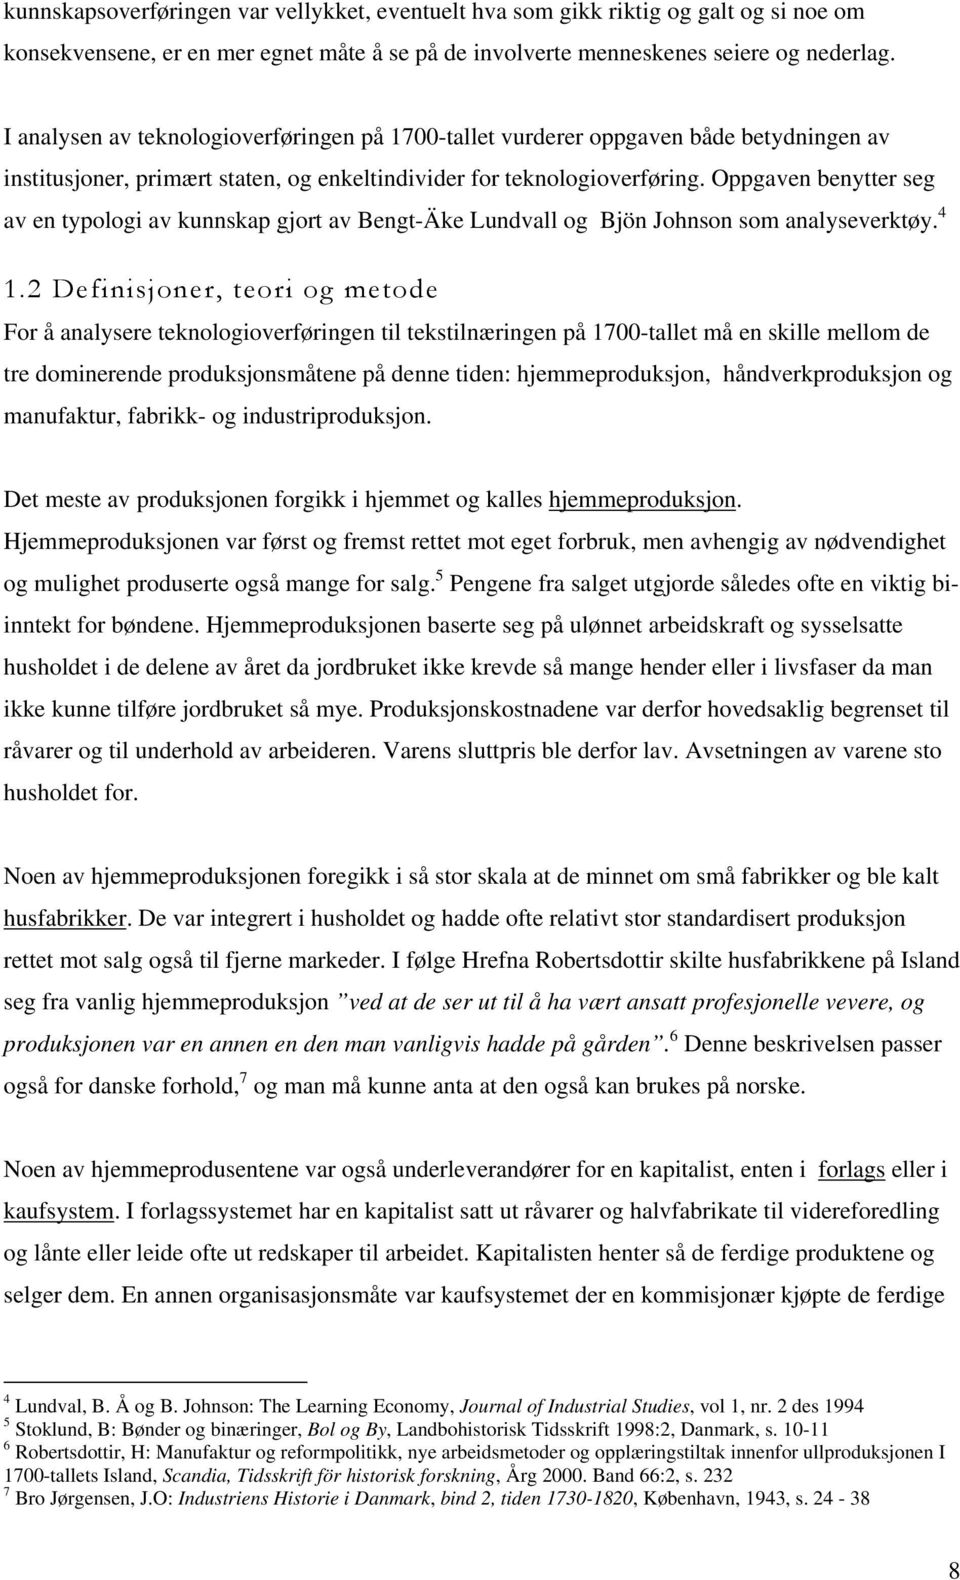 Oppgaven benytter seg av en typologi av kunnskap gjort av Bengt-Äke Lundvall og Bjön Johnson som analyseverktøy. 4 1.